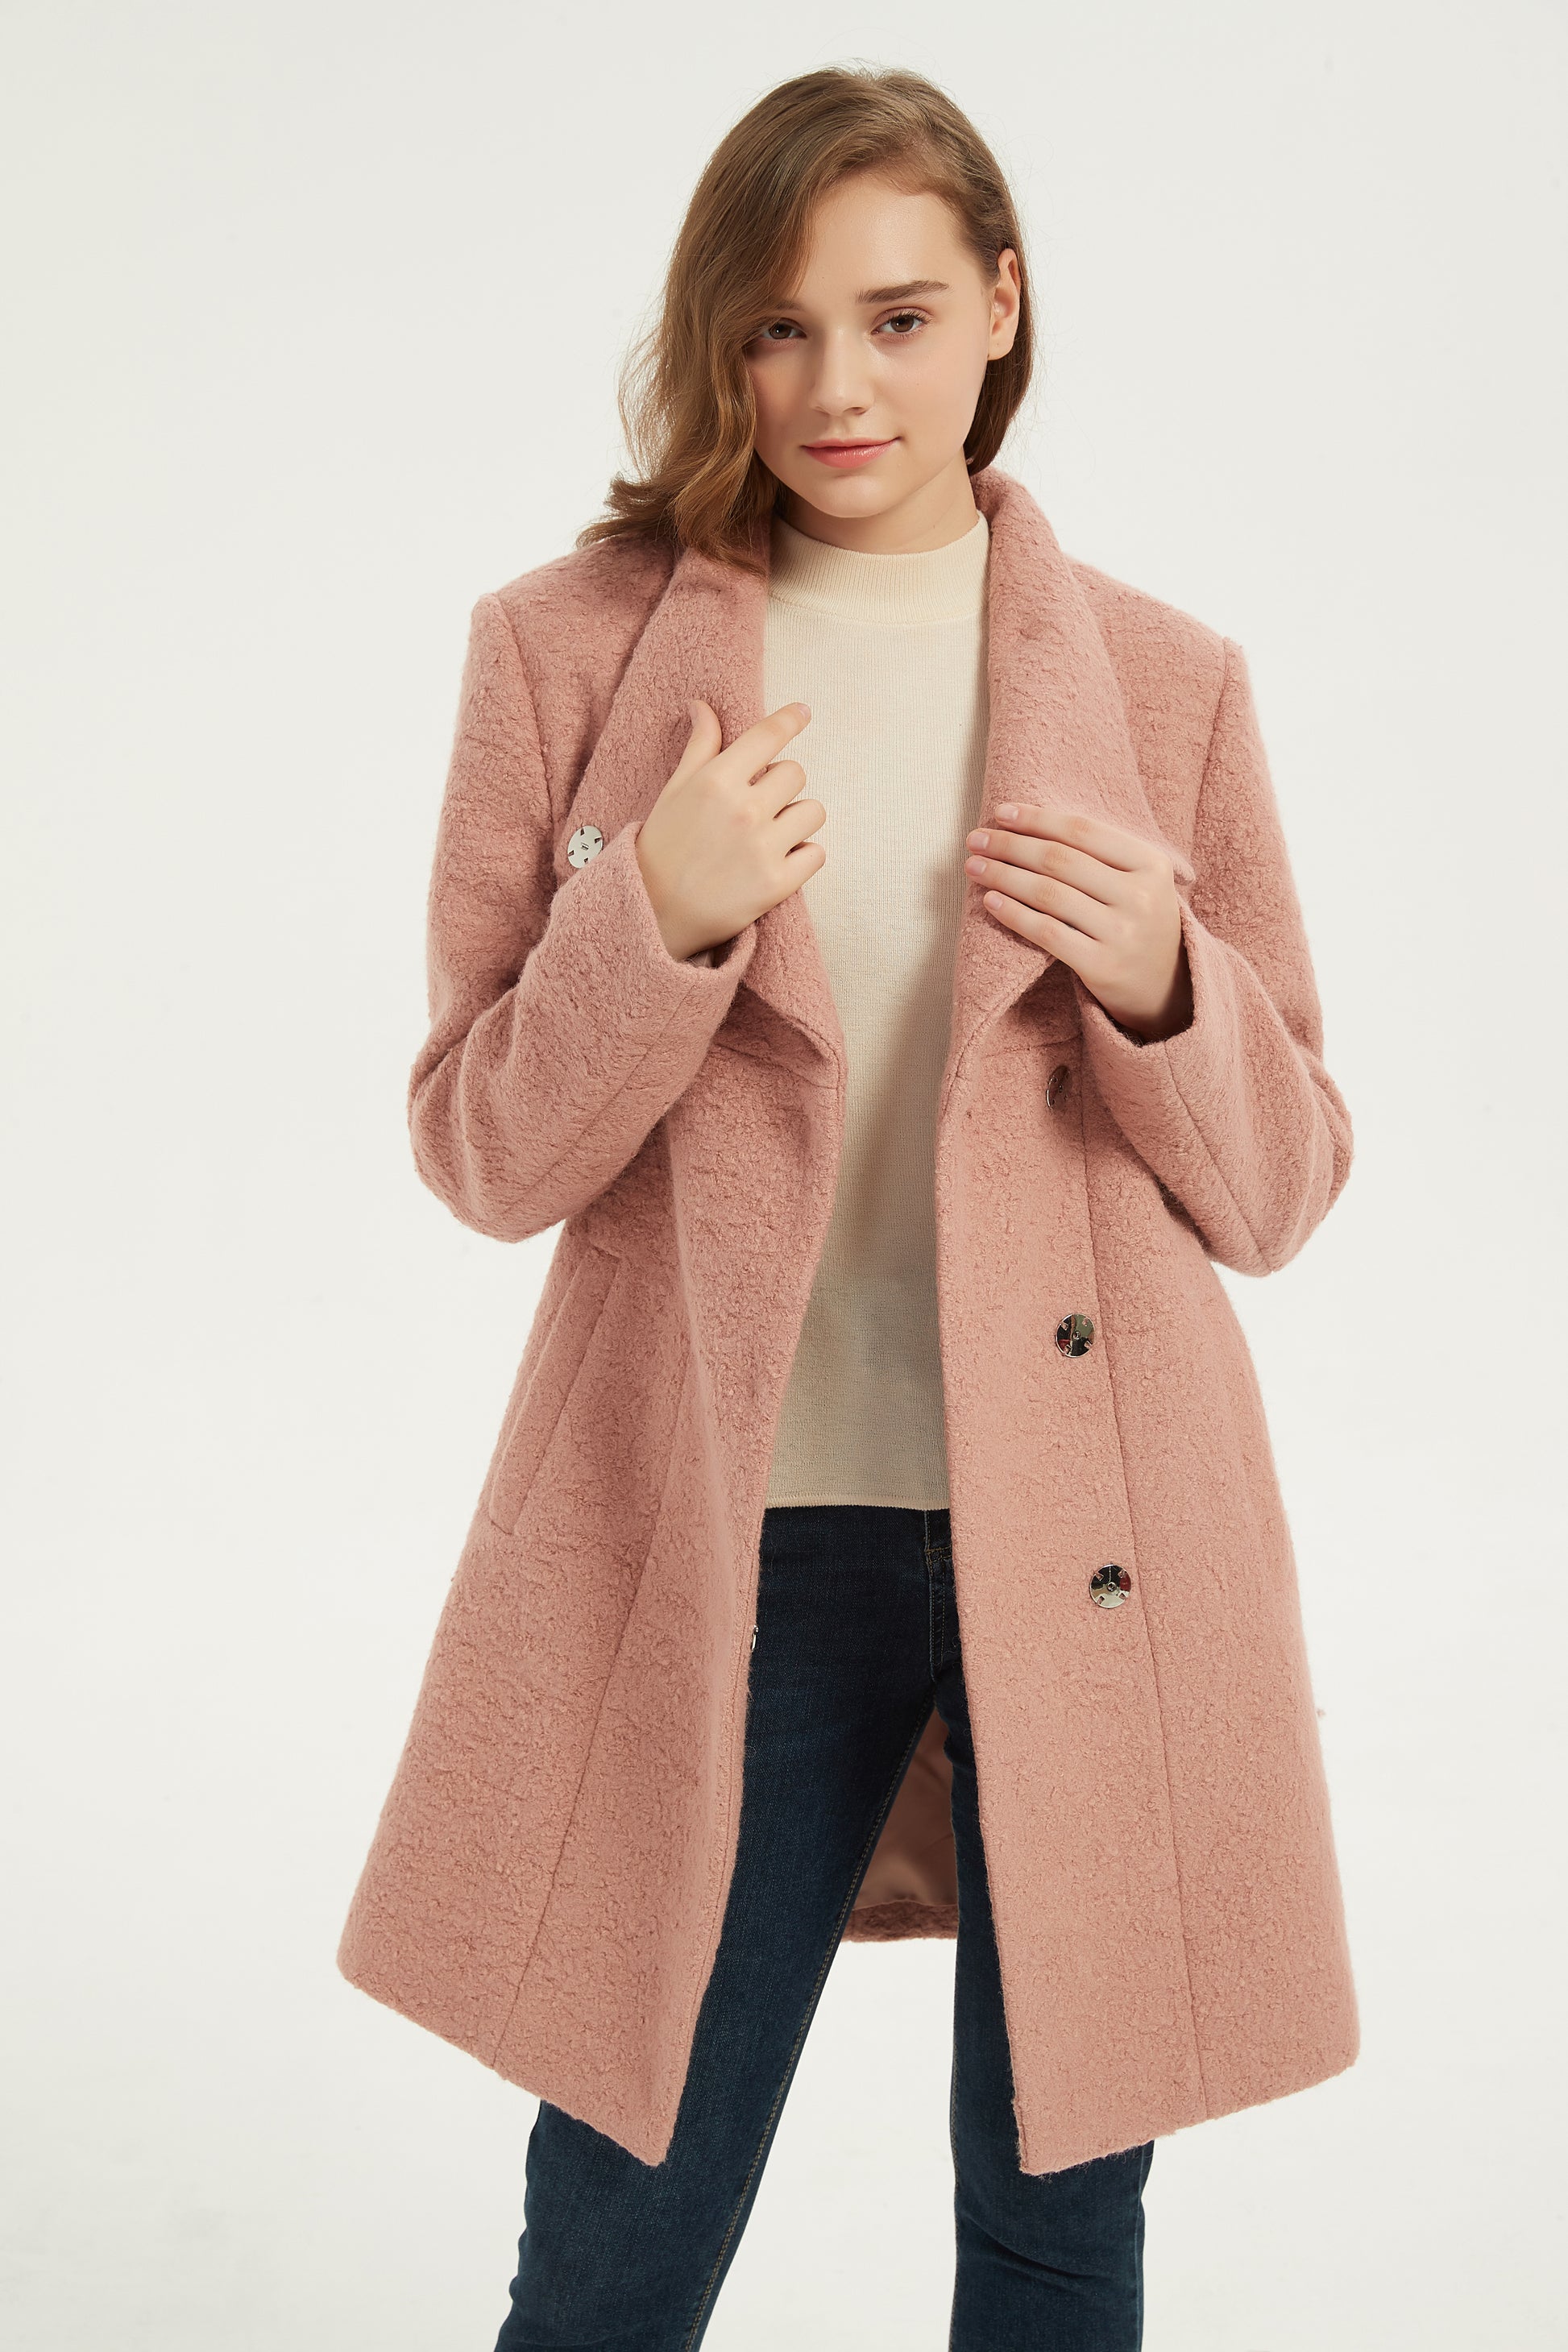 2019 Women Blends Woolens Overcoat Female Coat Autumn Winter Coats